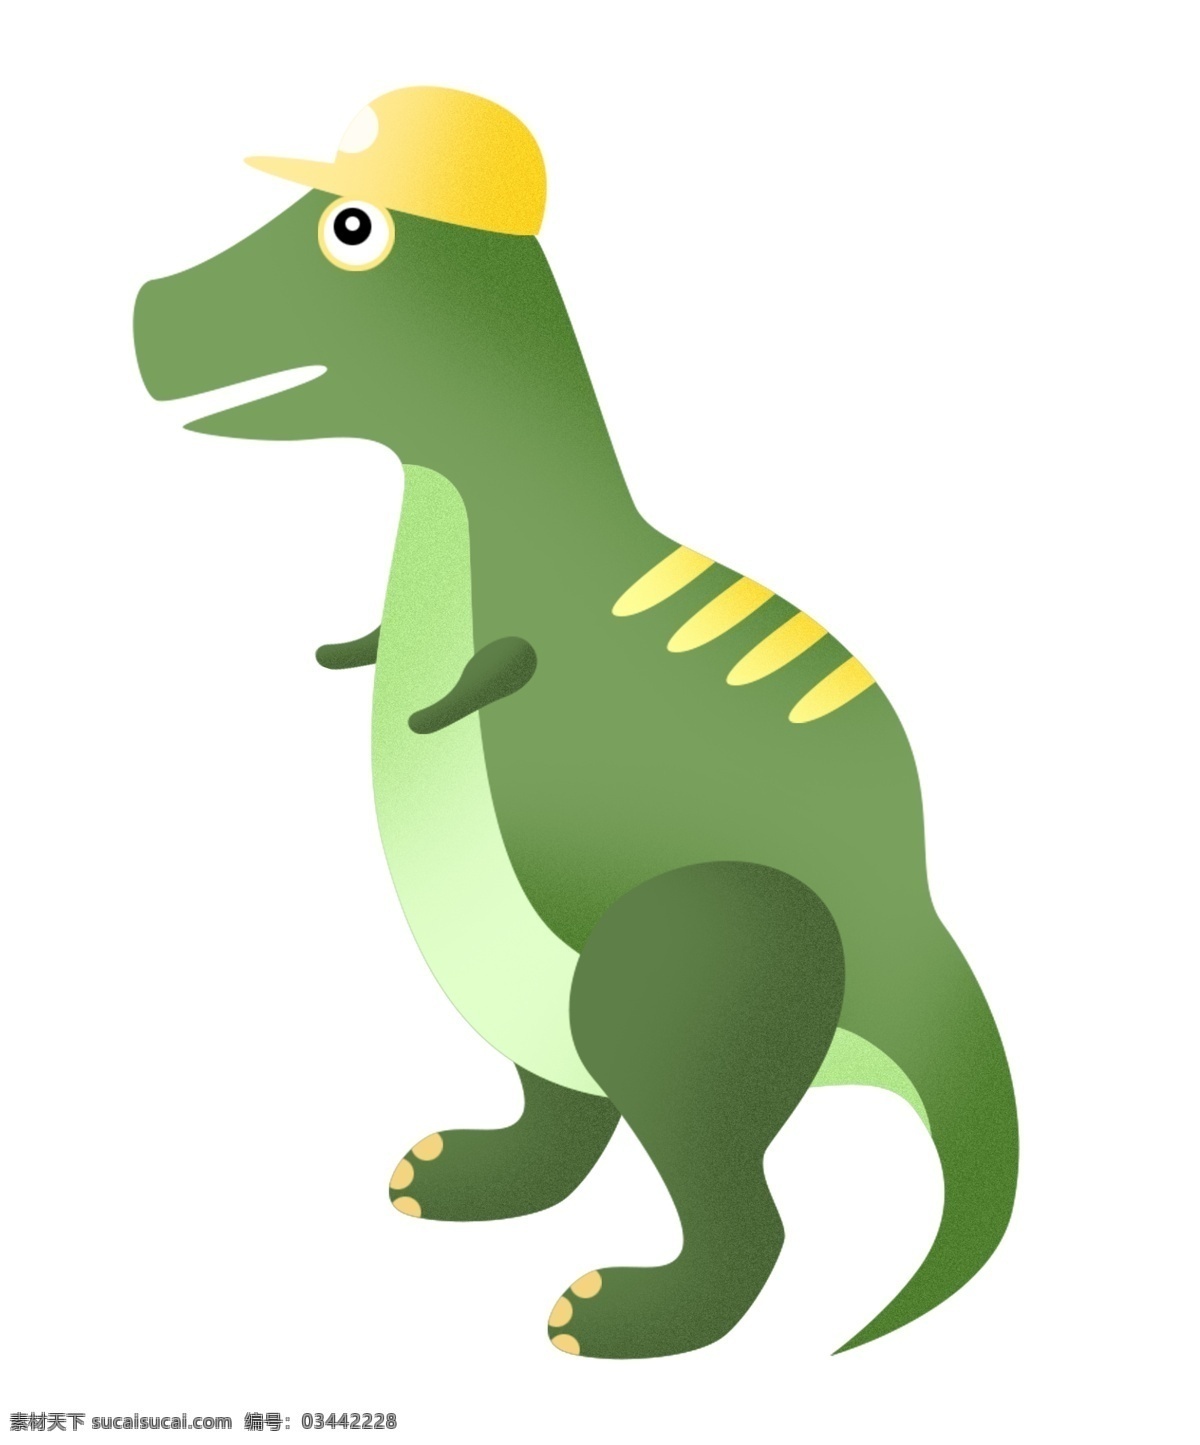 站立 行走 气 龙 插图 气龙 恐龙 恐龙插图 直立行走 卡通恐龙 动物